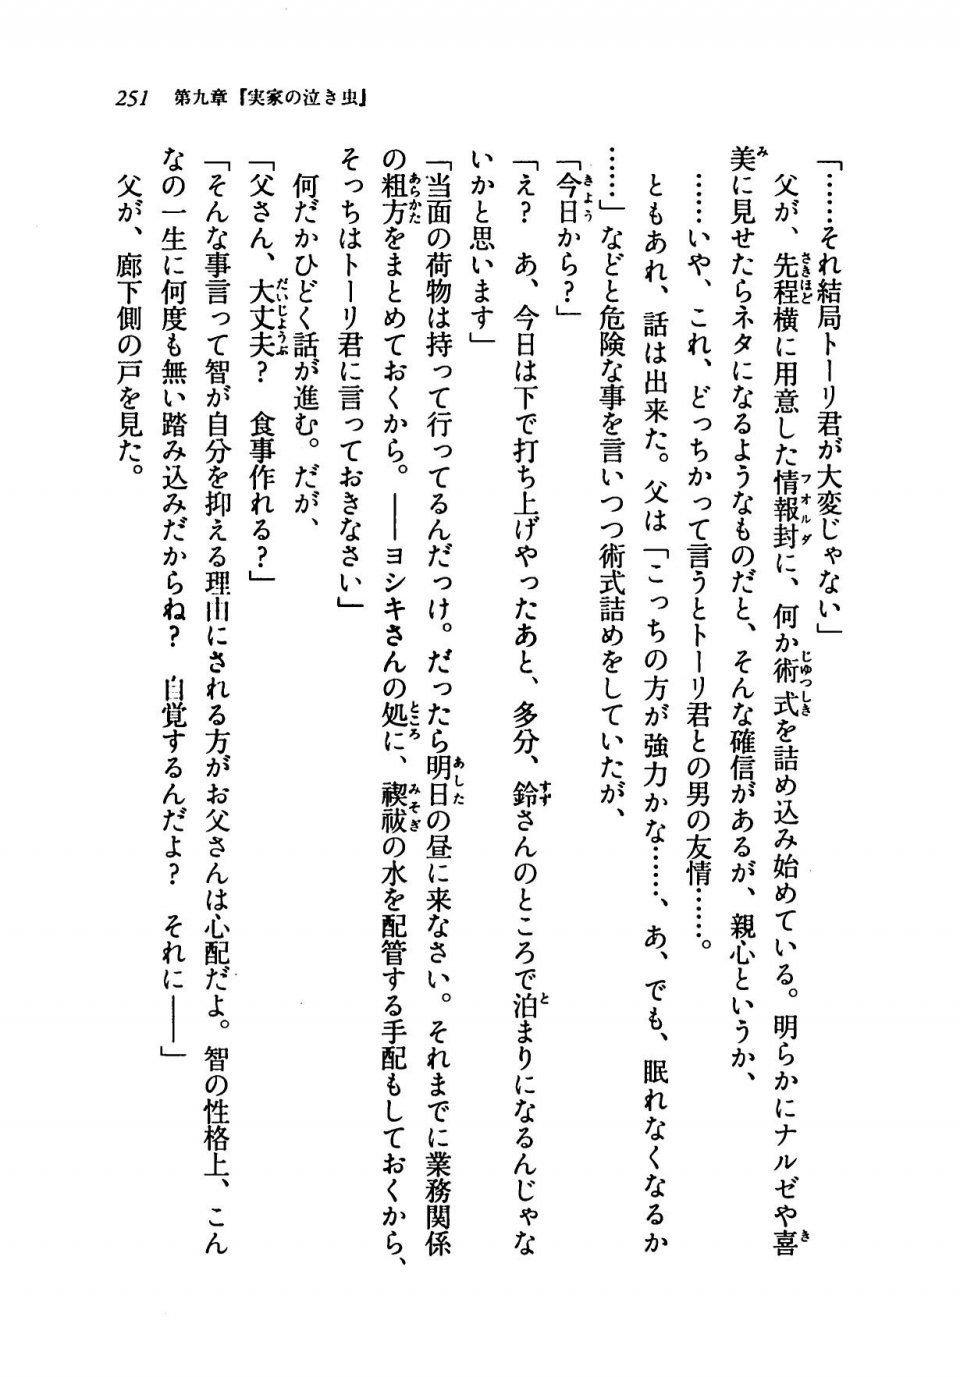 Kyoukai Senjou no Horizon LN Vol 19(8A) - Photo #251